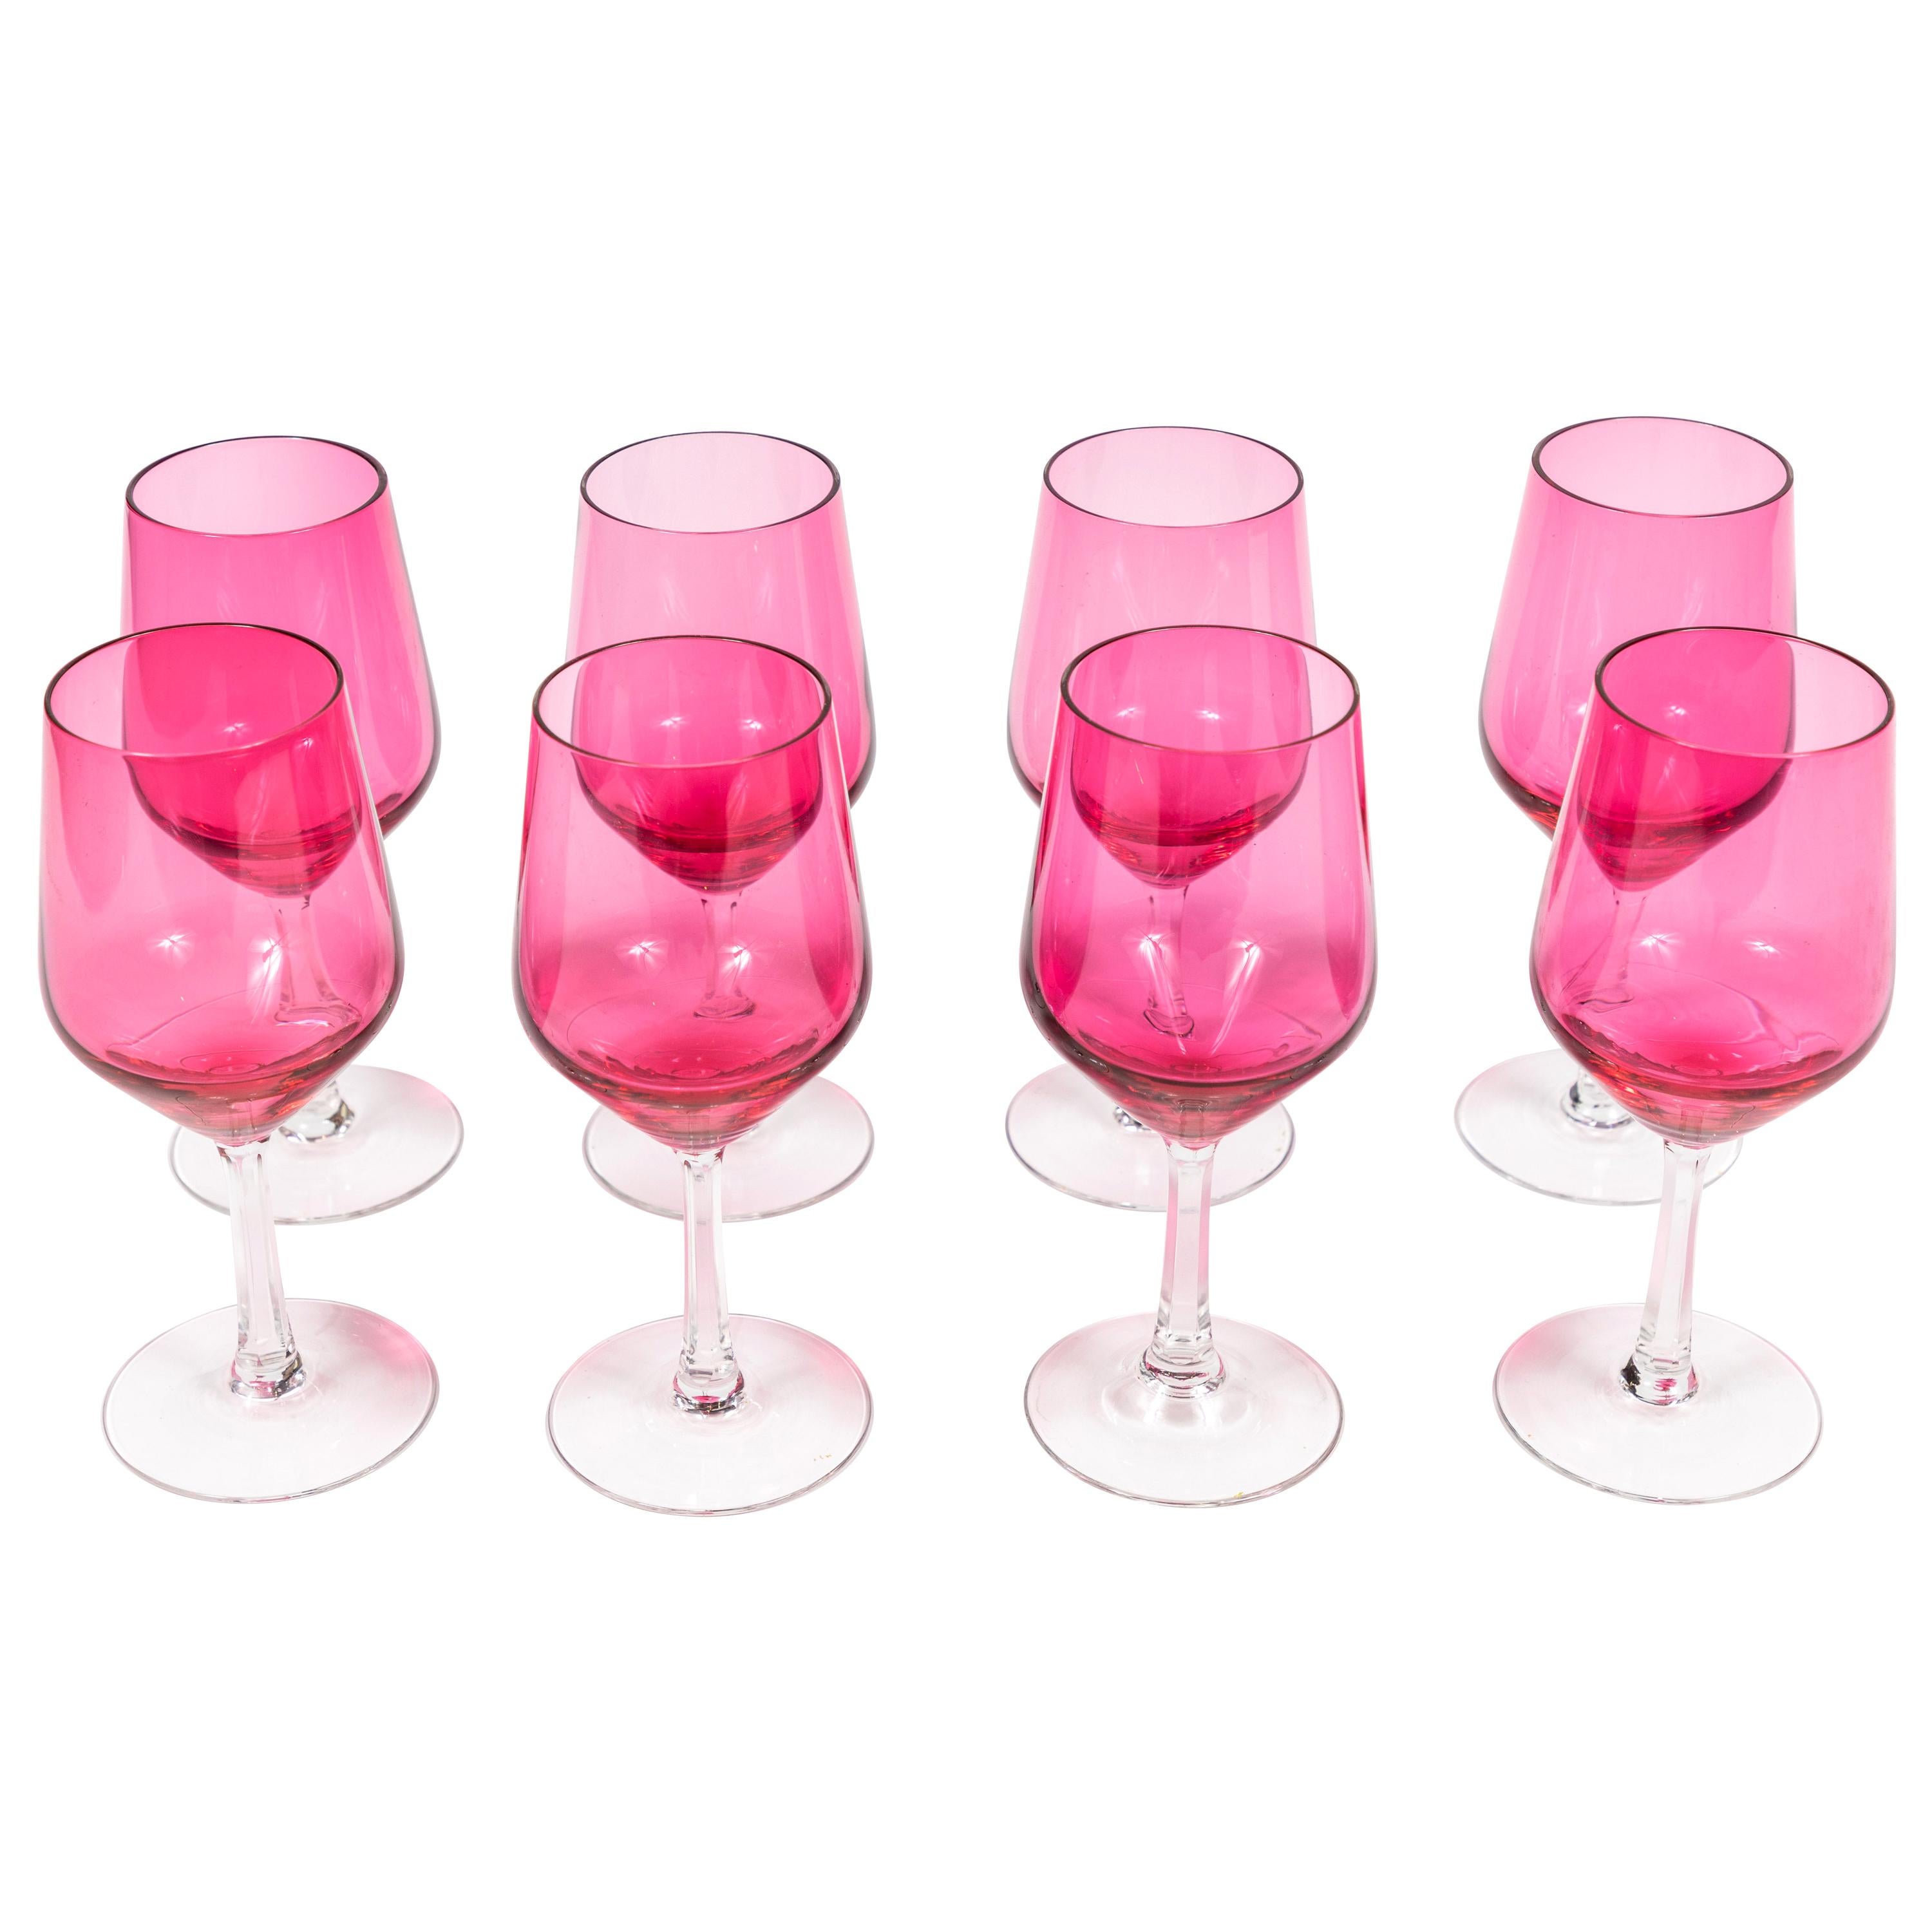 https://a.1stdibscdn.com/vintage-set-of-8-cranberry-crystal-wine-goblets-for-sale/1121189/f_170238721575445324786/17023872_master.jpg